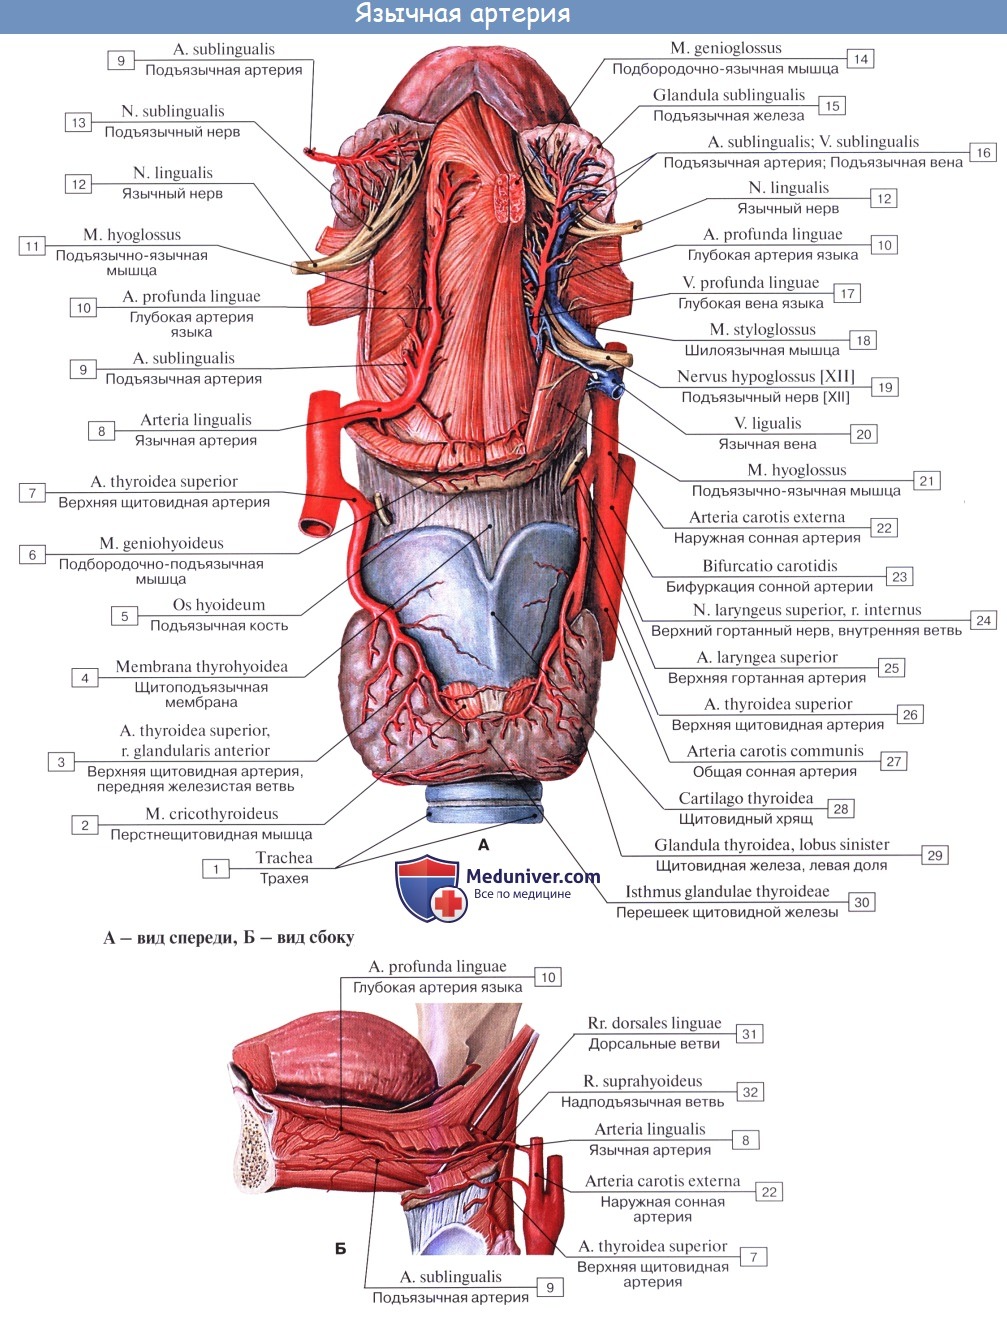 Анатомия: Язык. Строение языка. Мышцы языка. Иннервация, кровоснобжение языка